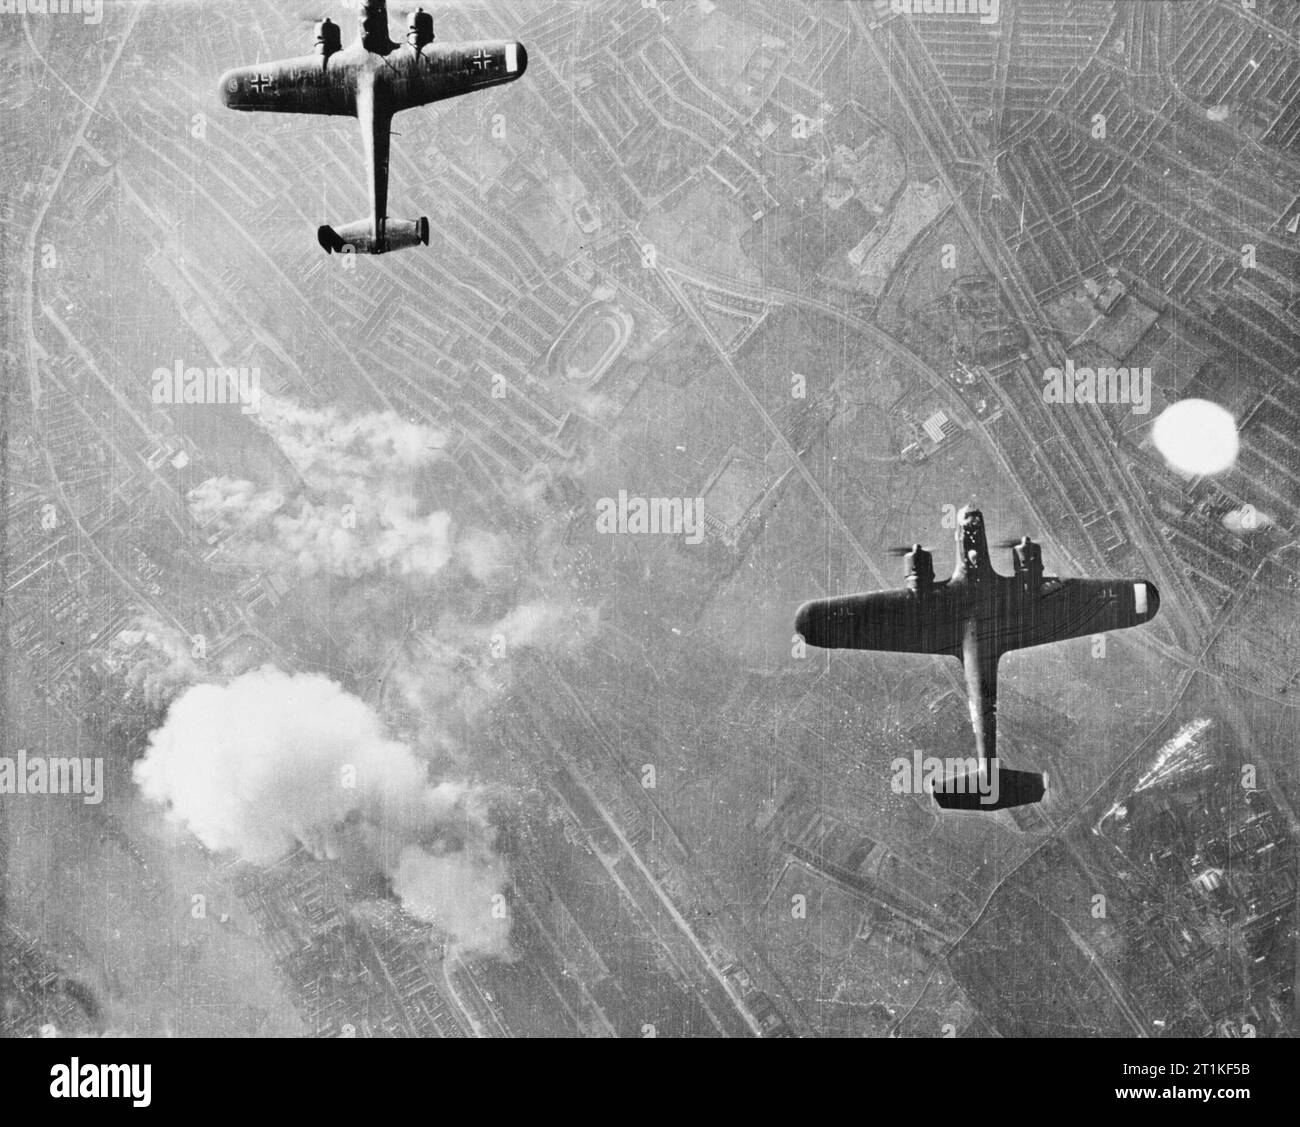 German Dornier Do 17 bombers over London, 7 September 1940. Operations: Two Dornier 17 bombers over West Ham, London. Stock Photo